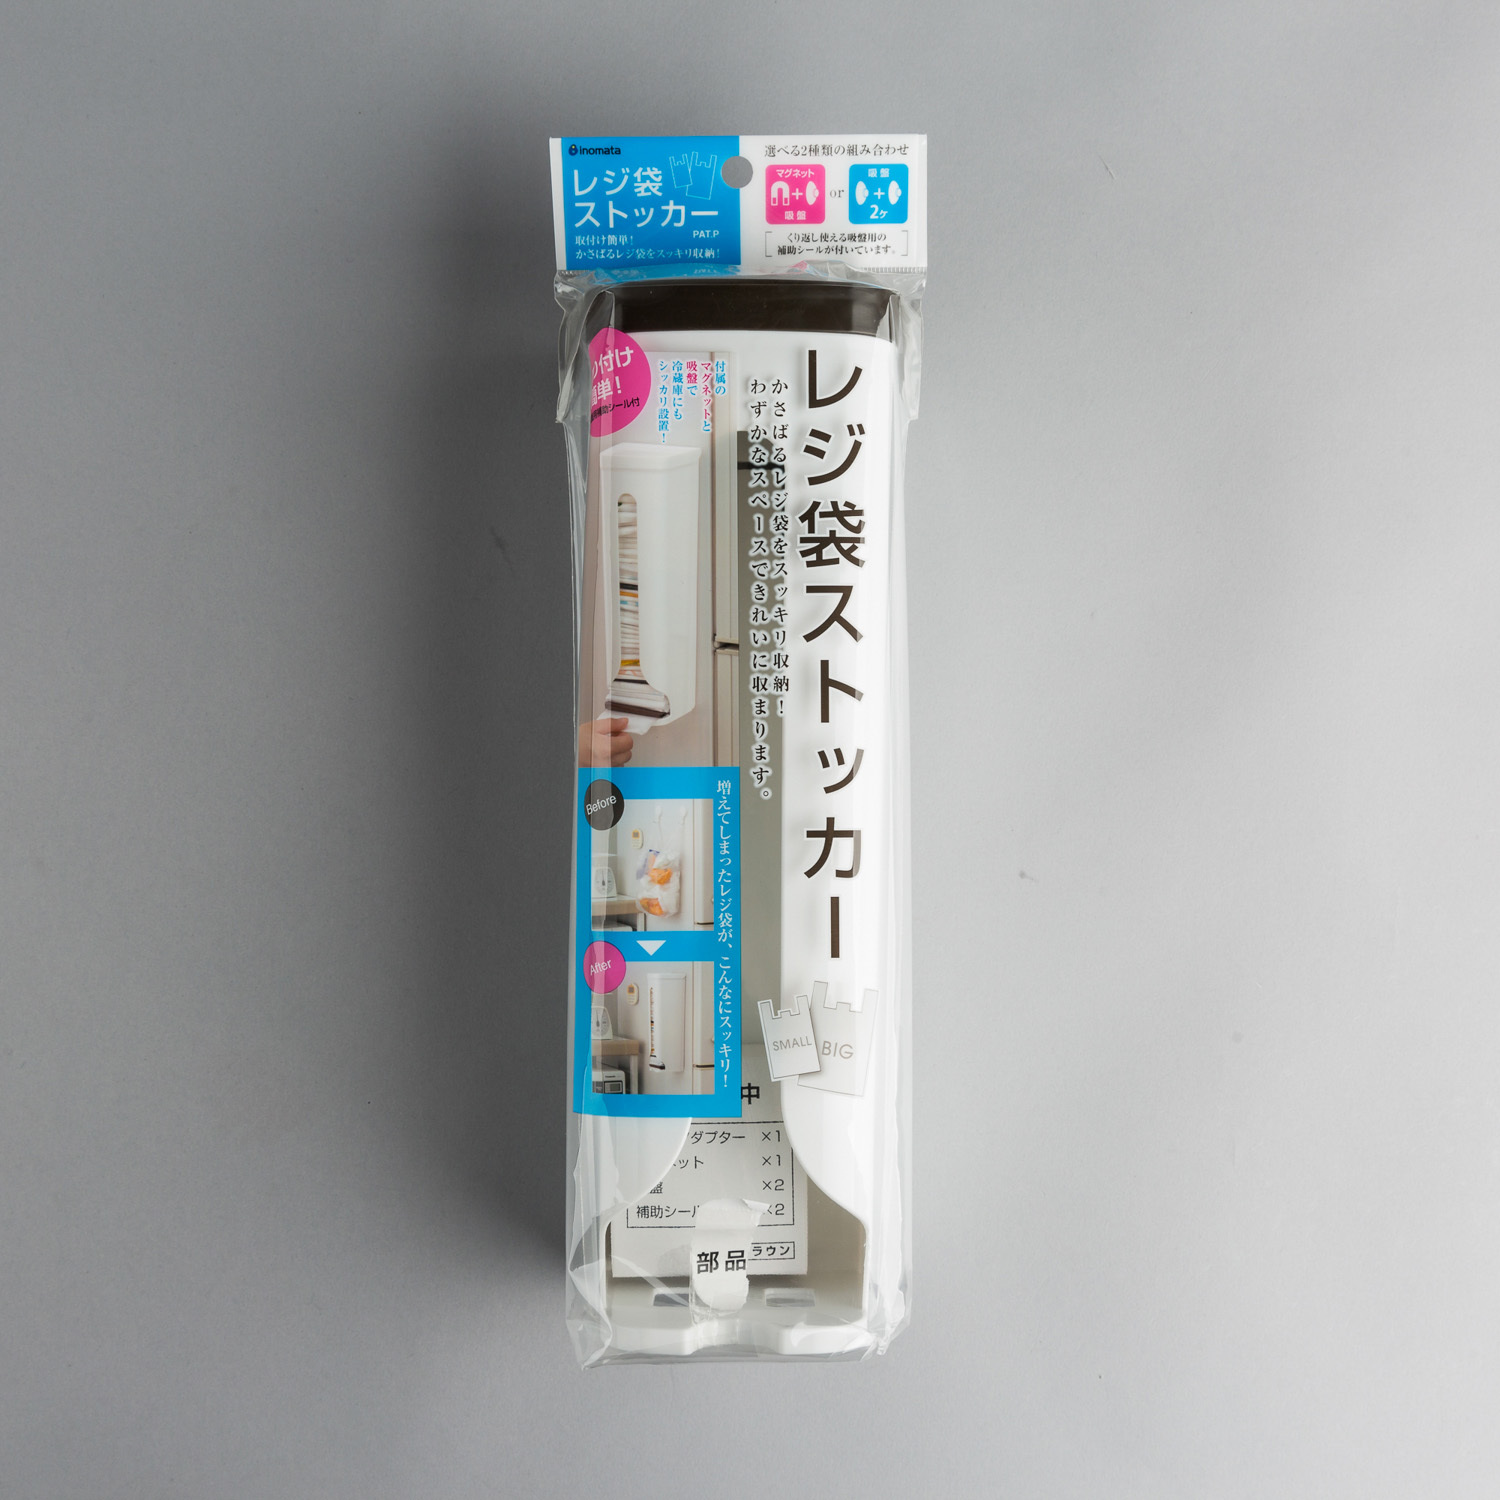 日本原产inomata塑料袋垃圾袋购物袋收纳盒储物收纳盒 棕色